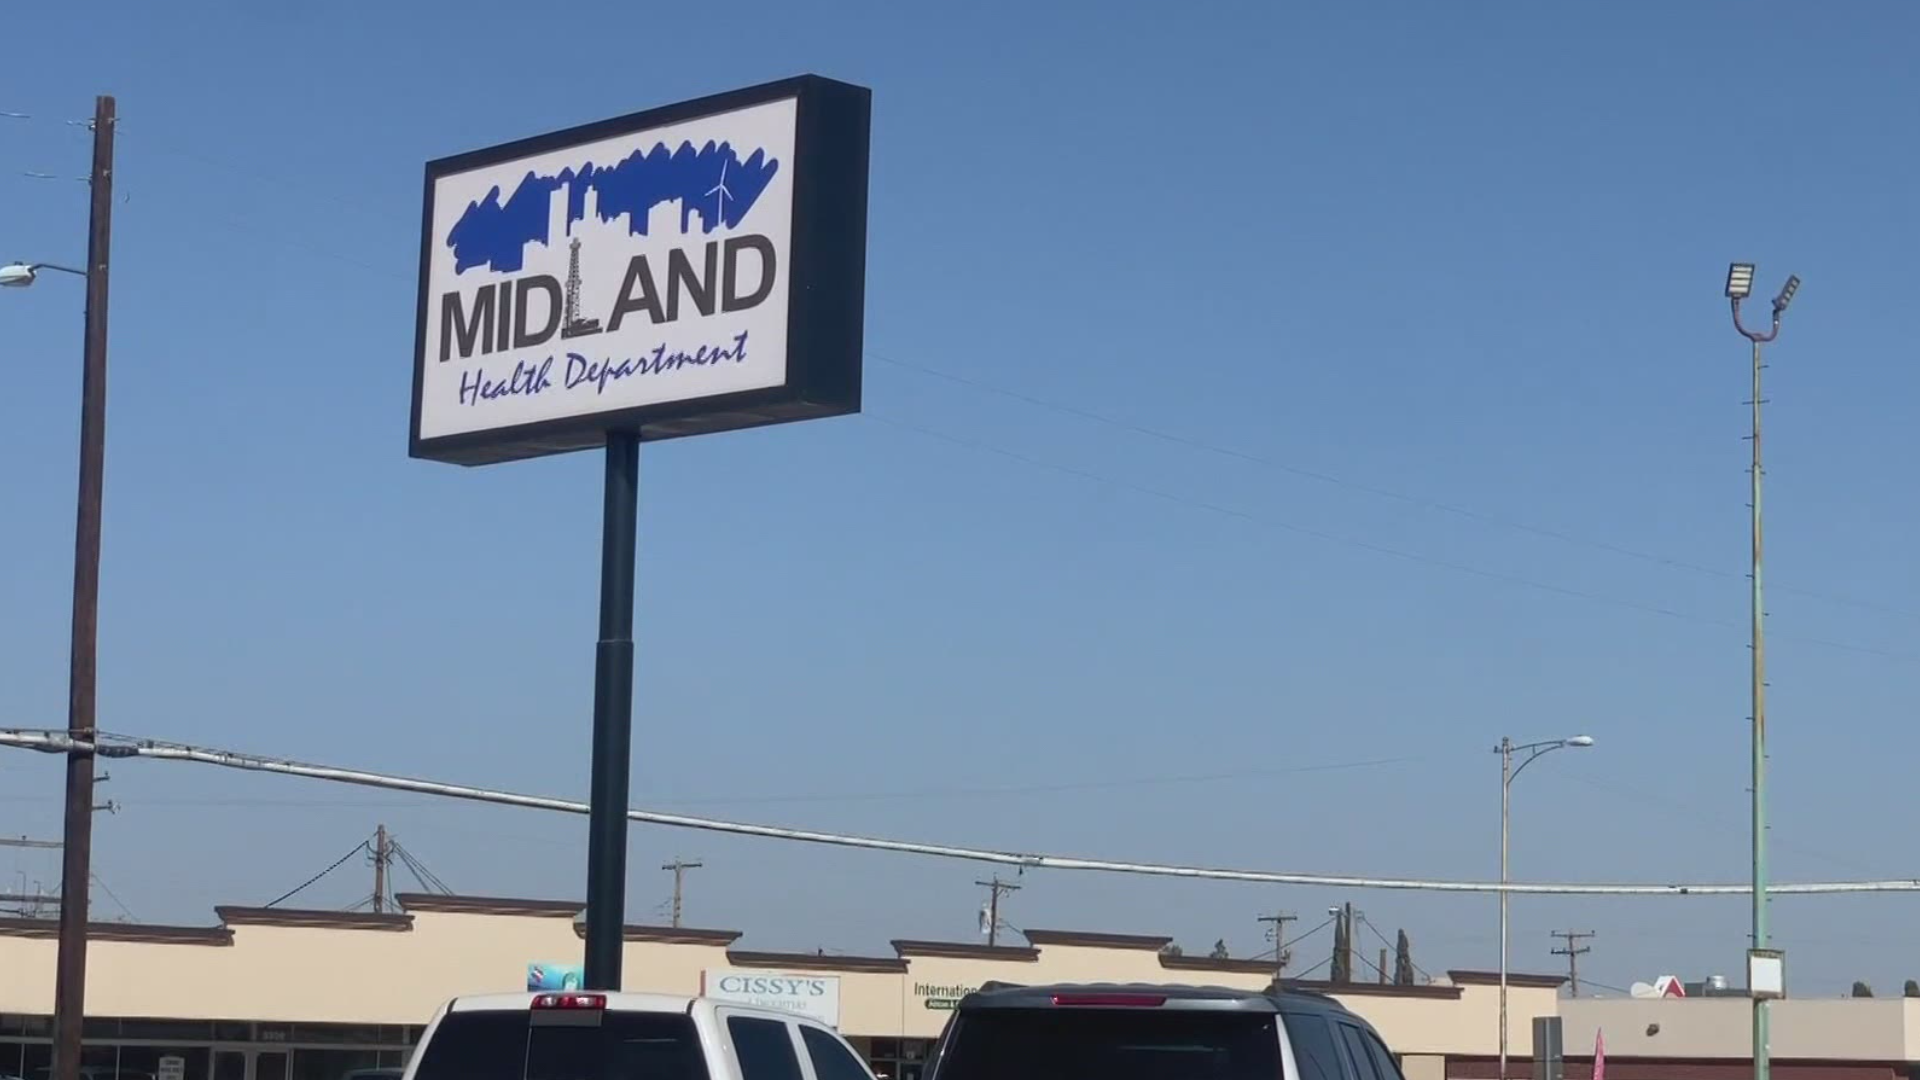 Why Midland?  Midland Health